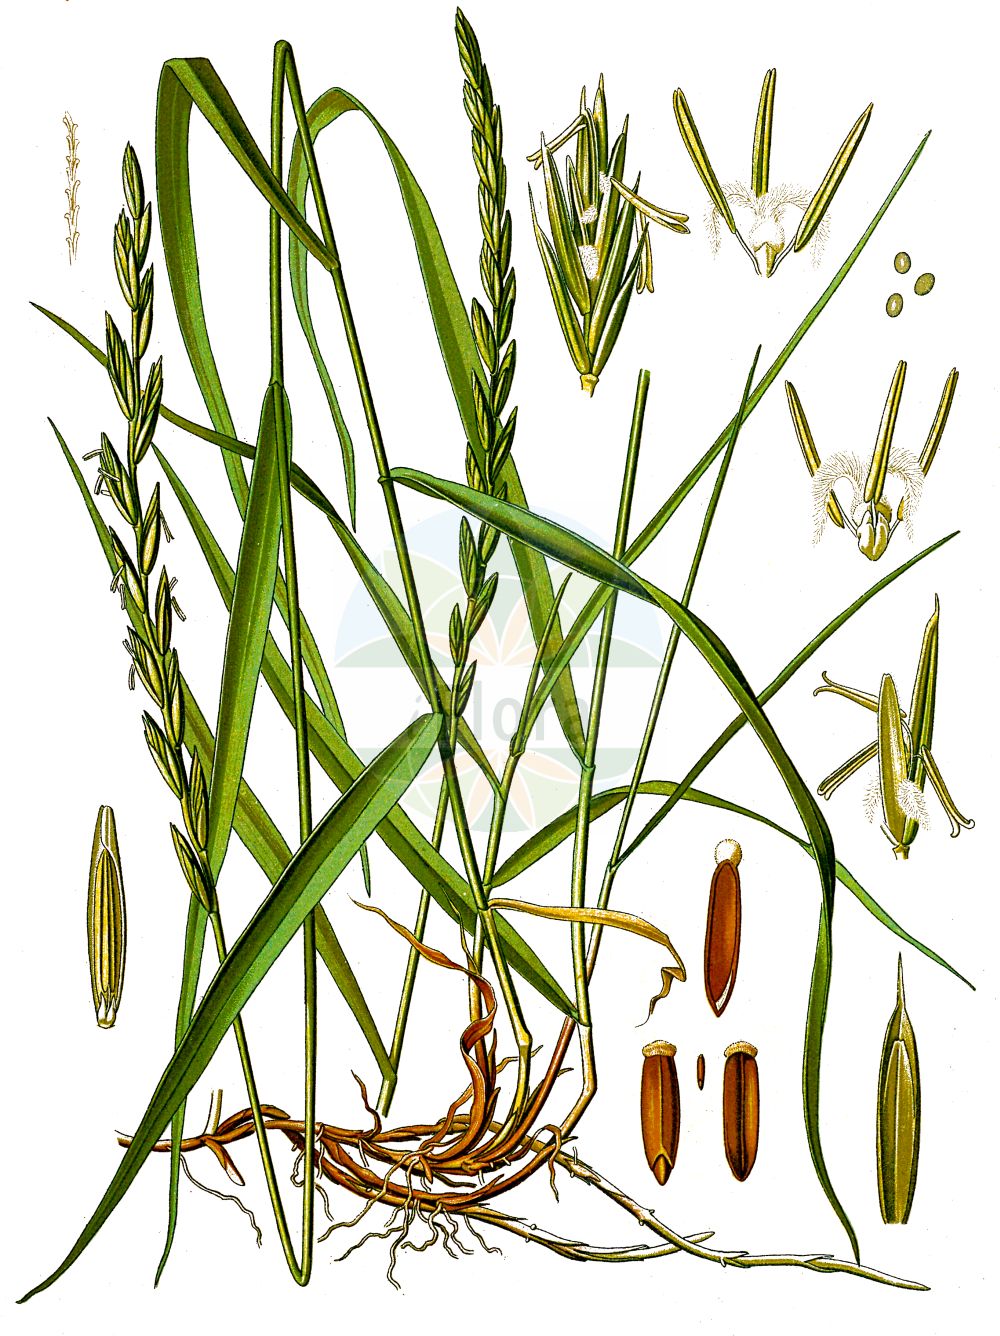 Historische Abbildung von Elytrigia repens (Kriech-Quecke - Common Couch). Das Bild zeigt Blatt, Bluete, Frucht und Same. ---- Historical Drawing of Elytrigia repens (Kriech-Quecke - Common Couch). The image is showing leaf, flower, fruit and seed.(Elytrigia repens,Kriech-Quecke,Common Couch,Agropyron caesium,Agropyron caldesii,Agropyron maroccanum,Agropyron repens,Elymus caesius,Elymus repens,Elytrigia repens,Triticum littoreum,Triticum repens,Kriech-Quecke,Gewoehnliche Quecke i. e. S.,Strand-Kriech-Quecke,Common Couch,Couch Grass,Tick Quackgrass,Common Couchgrass,Creeping Wheat Grass,Dog's Grass,Quackgrass,Quickgrass,Quitchgrass,Twitch,Twitchgrass,Elytrigia,Poaceae,Süßgräser,Grass family,Blatt,Bluete,Frucht,Same,leaf,flower,fruit,seed,Koehler (1883-1898))